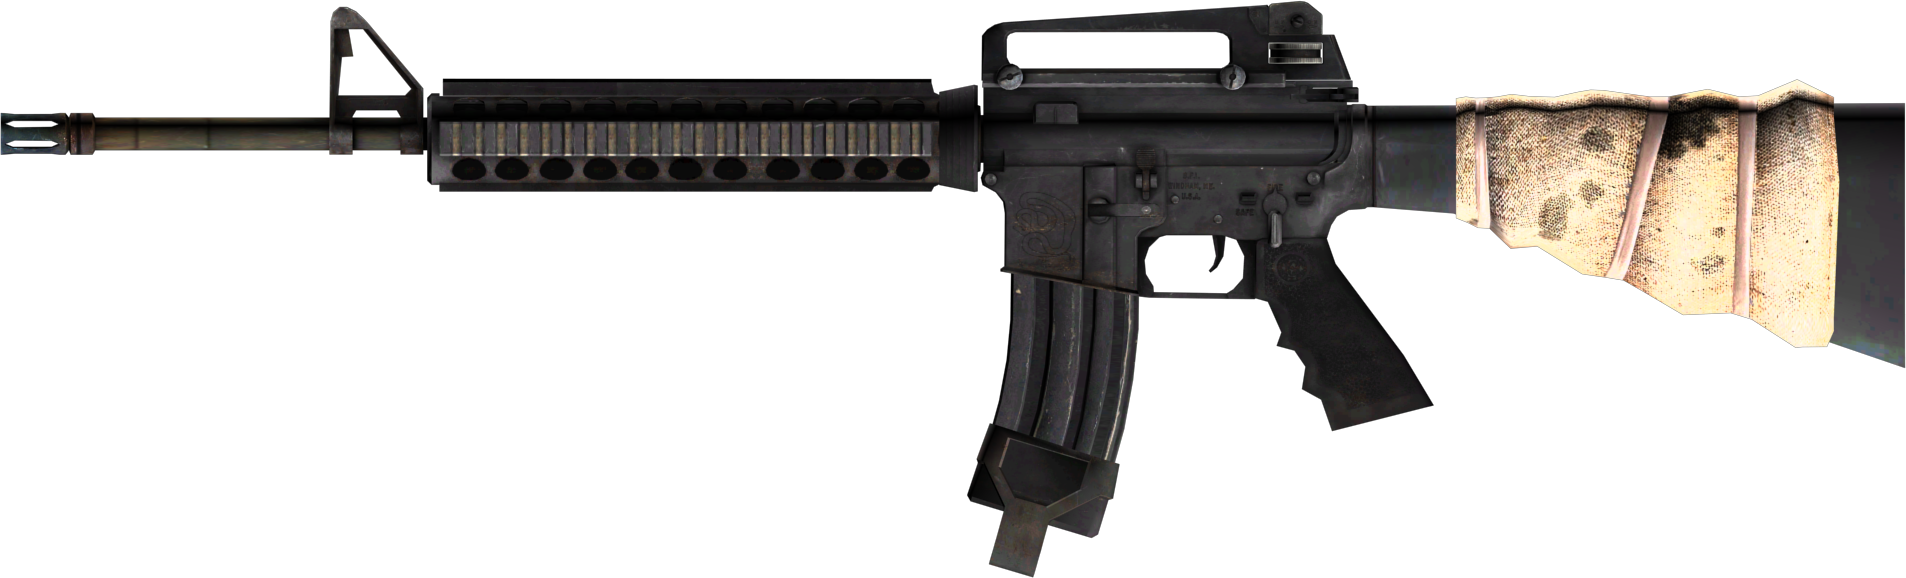 M16 USA assault rifle PNG